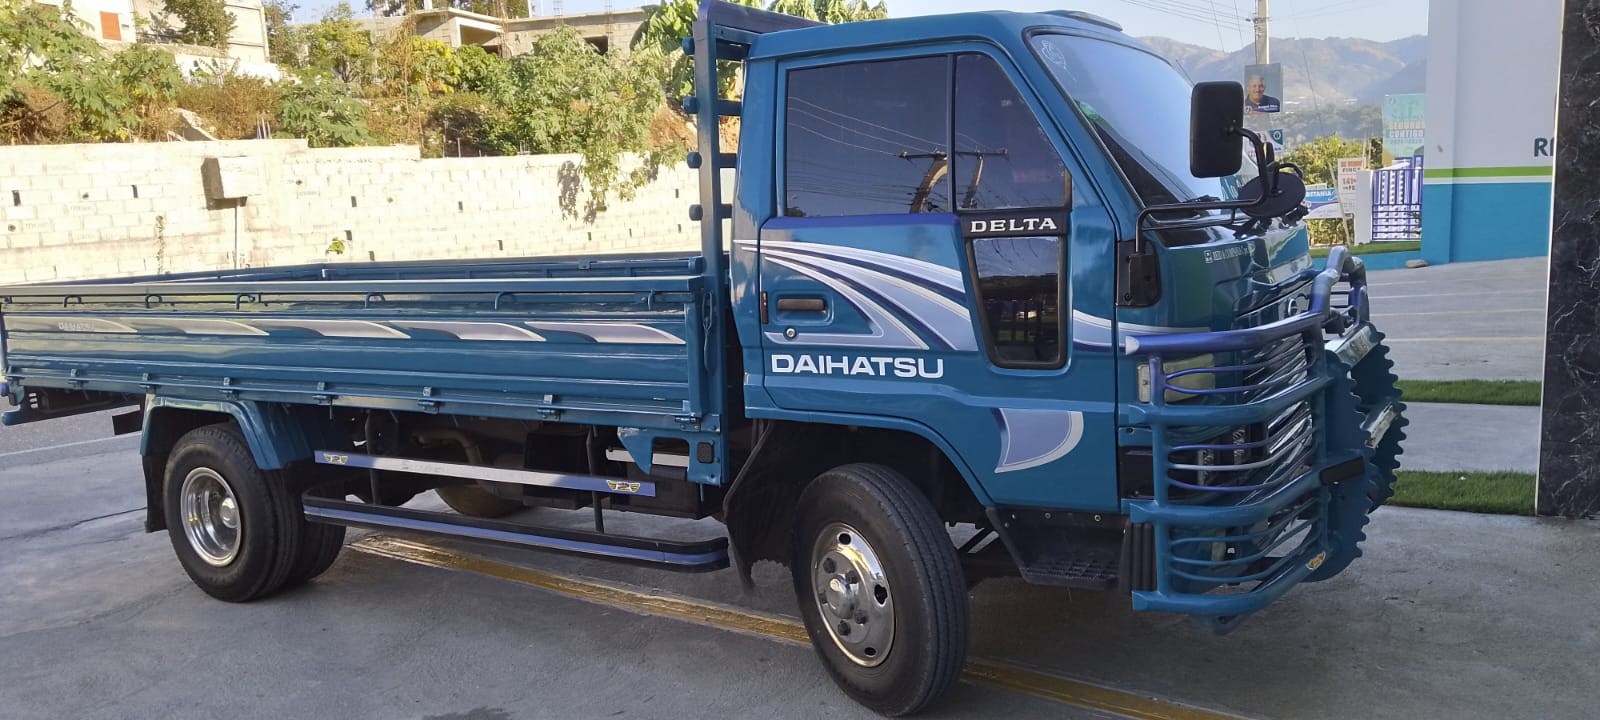 camiones y vehiculos pesados - Daihatsu Delta 2003 Cama Larga Cara Ancha 1